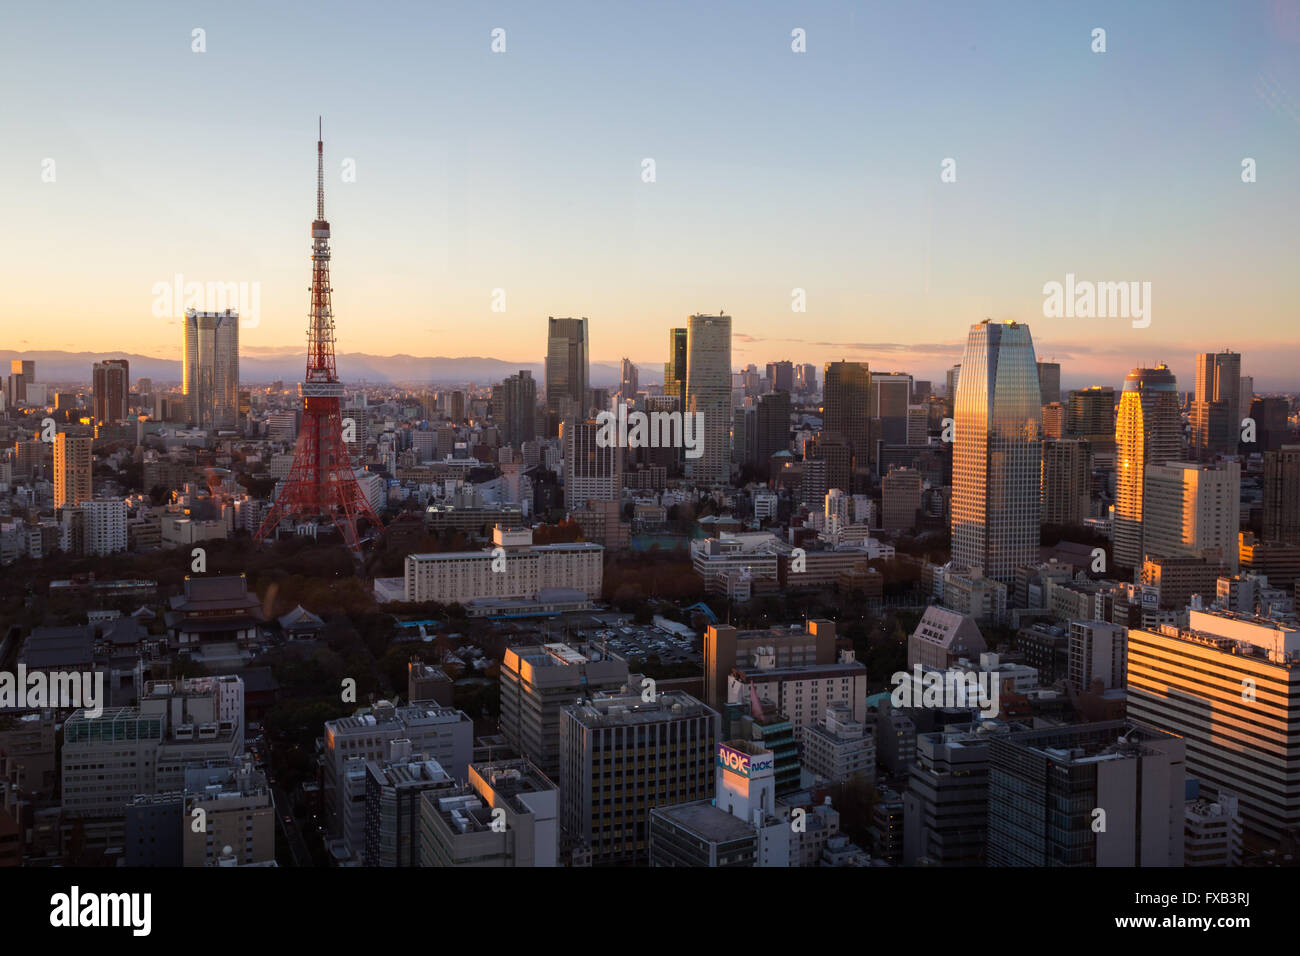 Tokyo, Japon - 18 décembre 2014 : photographie de Tokyo skyline avec Tour de Tokyo prises du World Trade Center. Banque D'Images